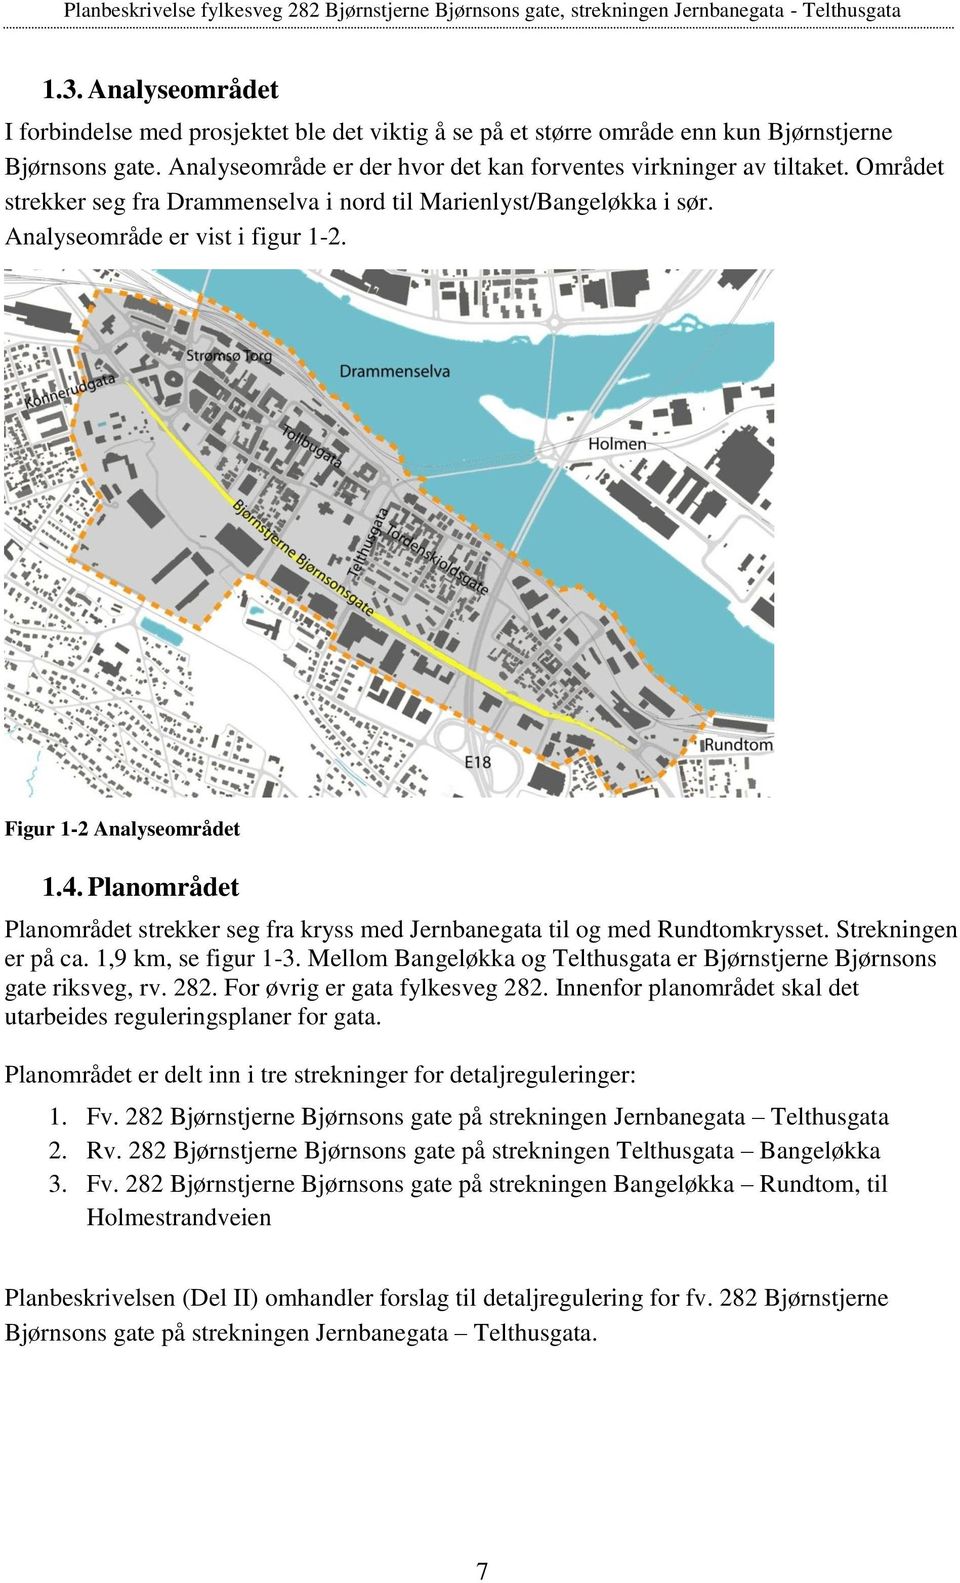 Planområdet Planområdet strekker seg fra kryss med Jernbanegata til og med Rundtomkrysset. Strekningen er på ca. 1,9 km, se figur 1-3.